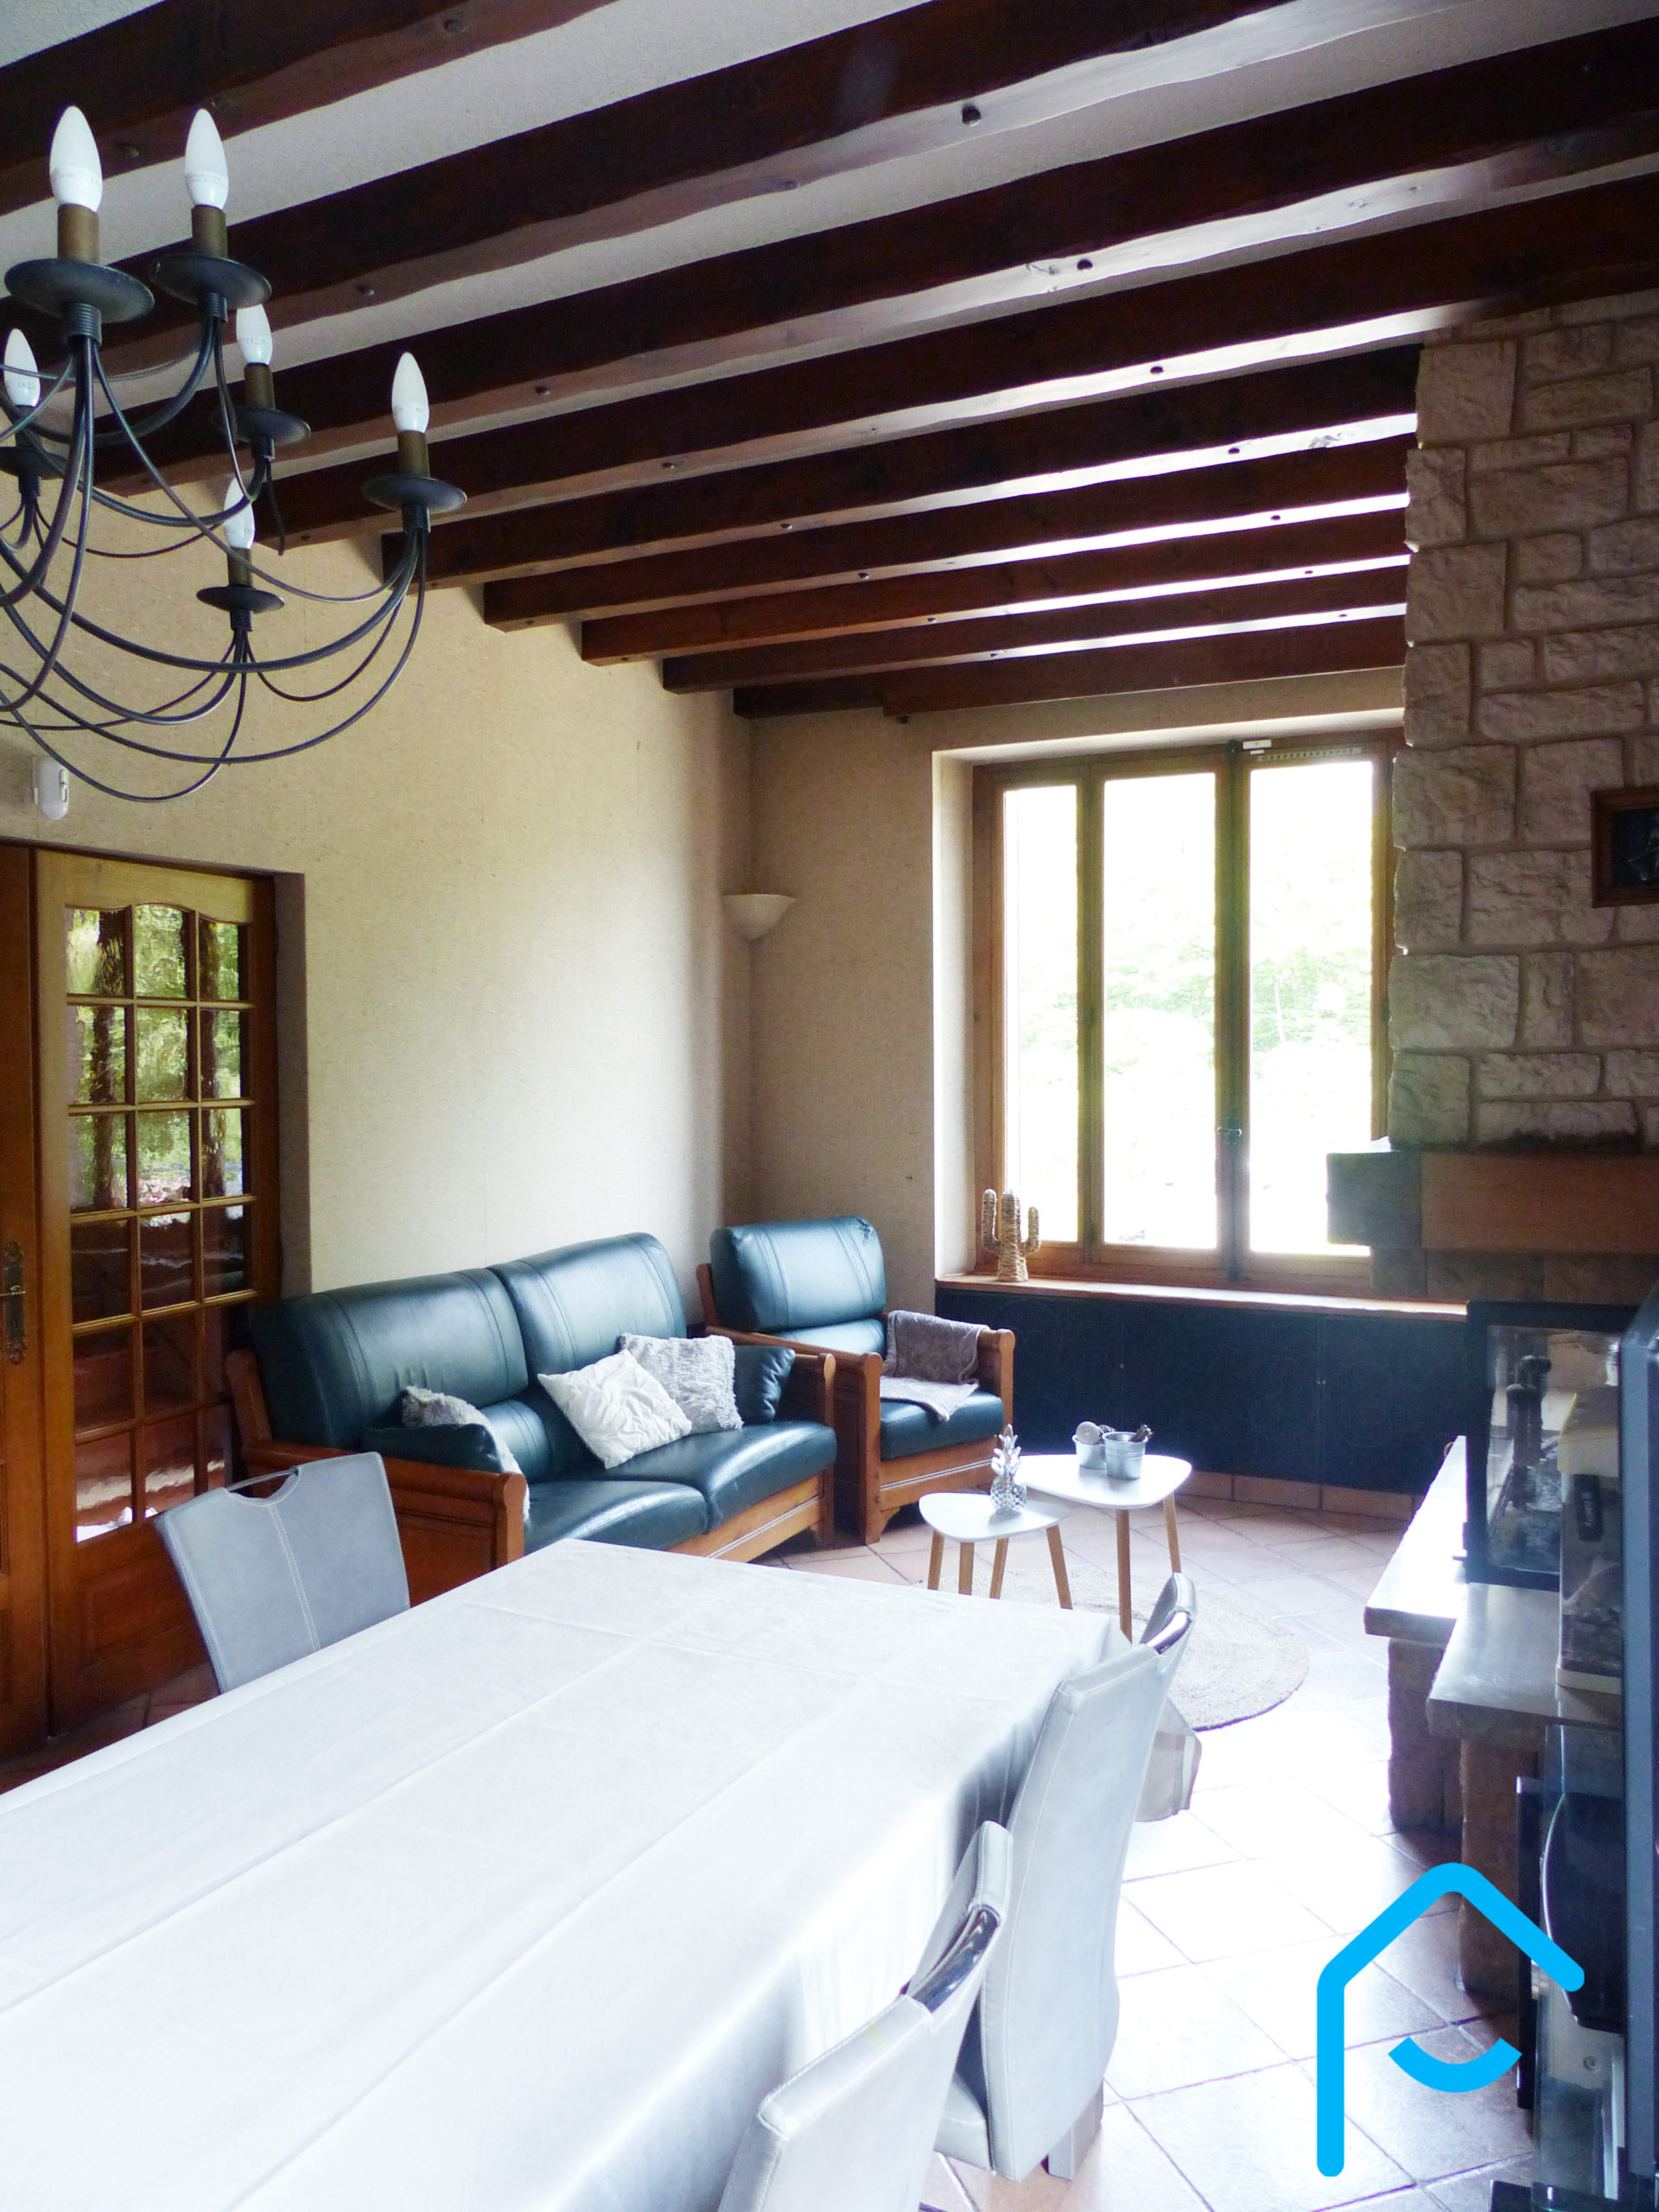 A vendre Savoie maison avec piscine terrain lac Aiguebelette vue 11